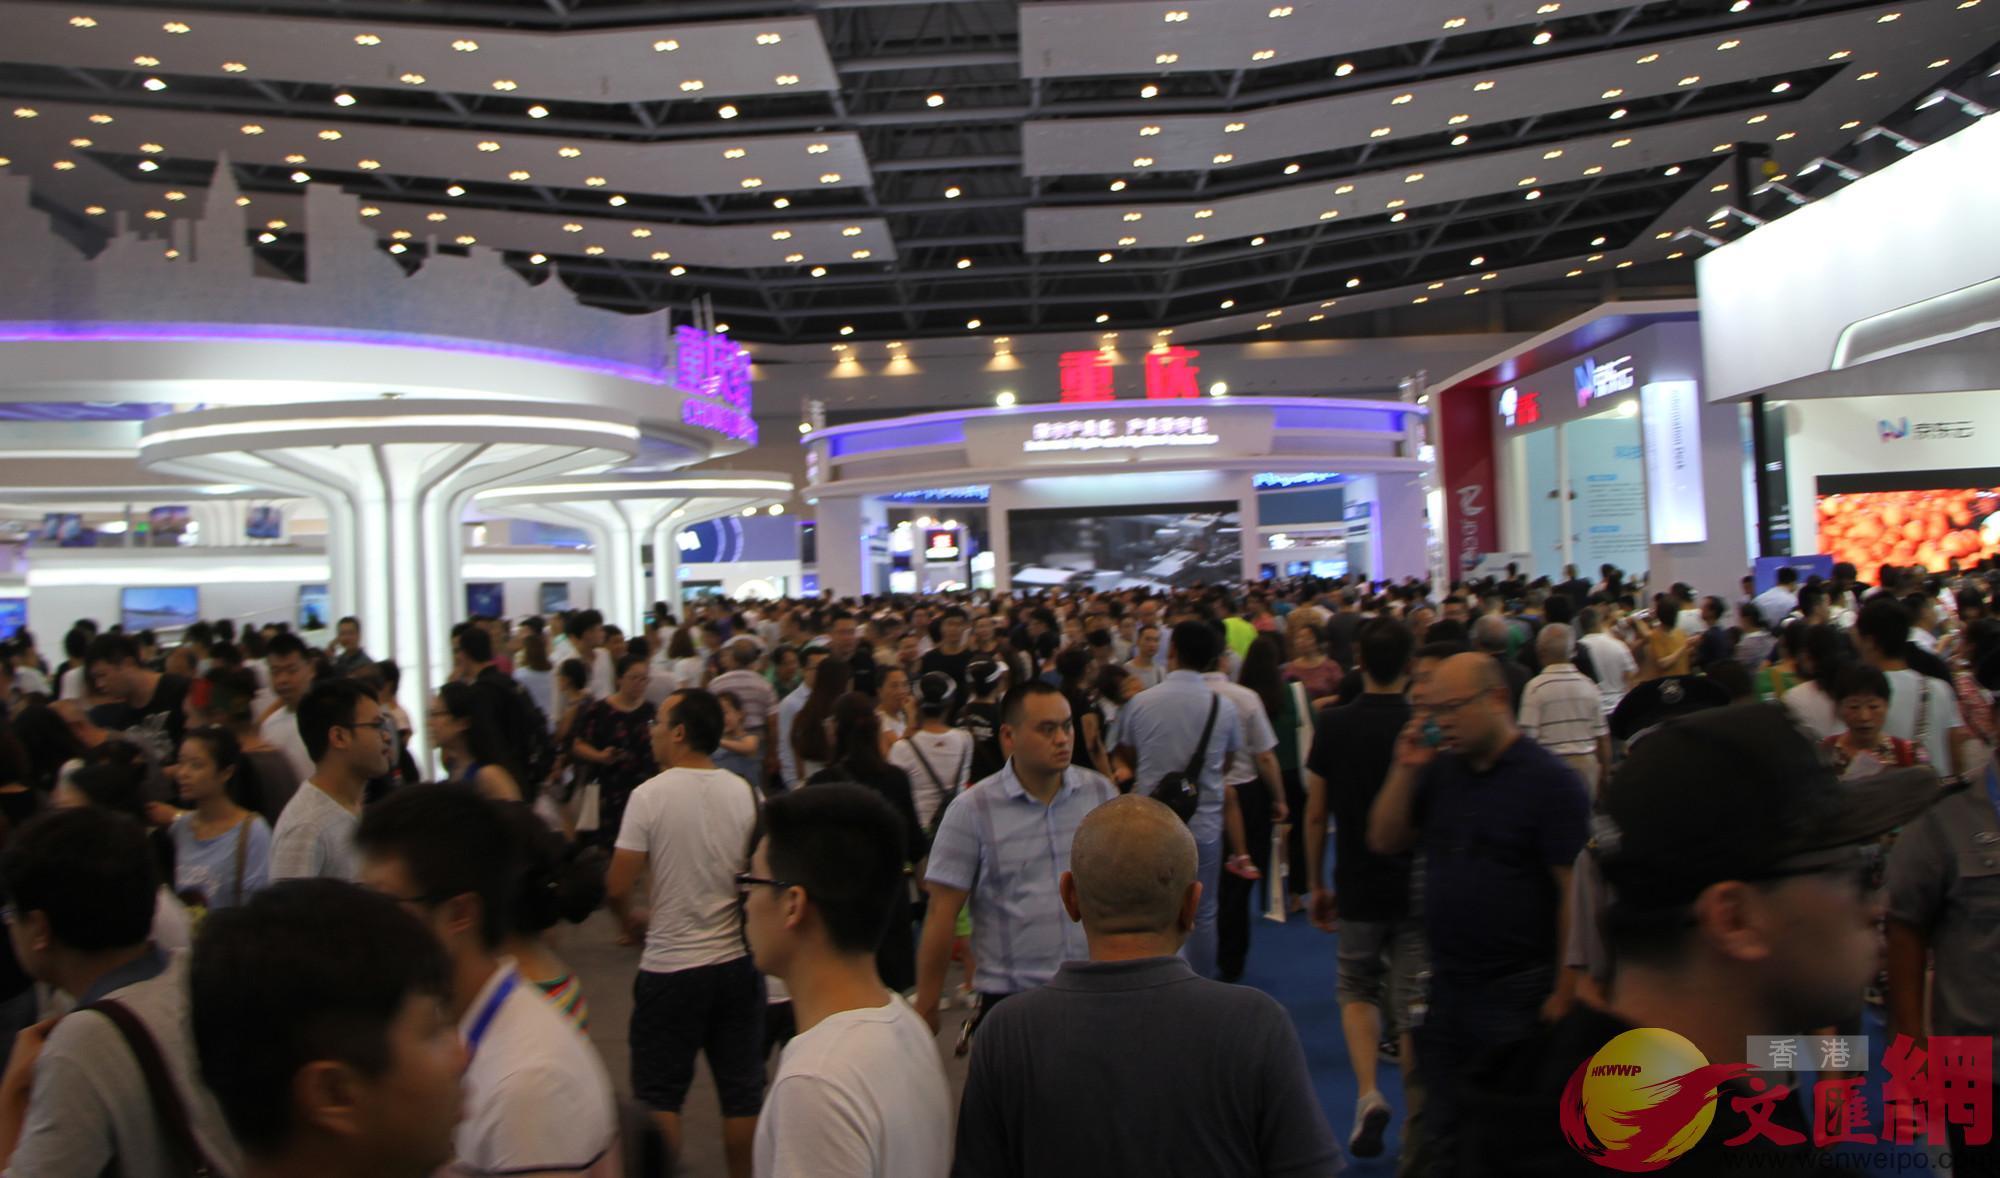 2018中國國際智能產業博覽會吸引眾多群眾觀展C]記者 李兵 攝^